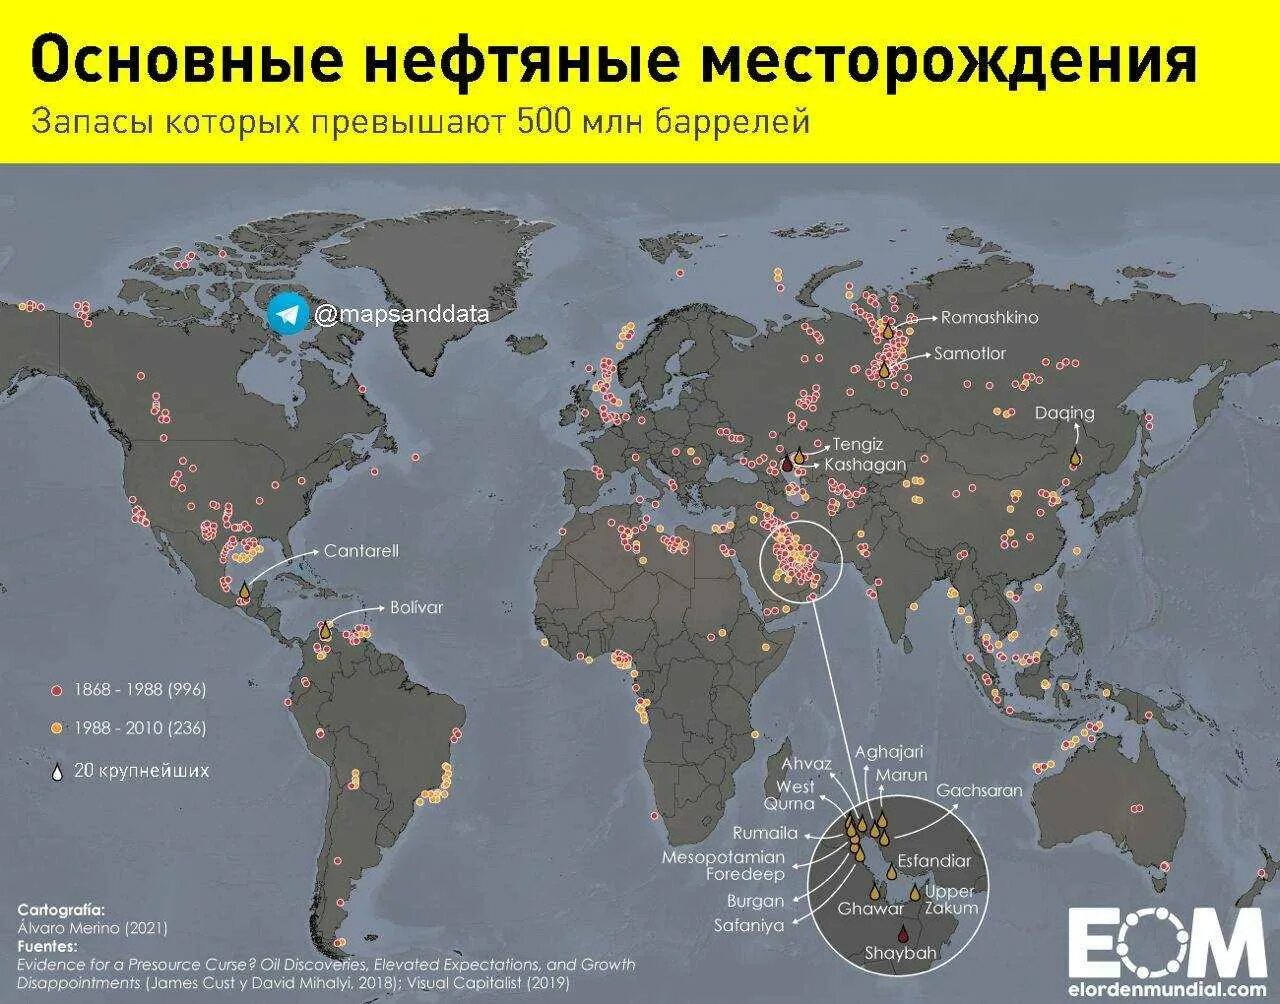 Что будет нефтью в мире. Карта месторождений нефти в мире. Основные месторождения нефти в мире на карте.